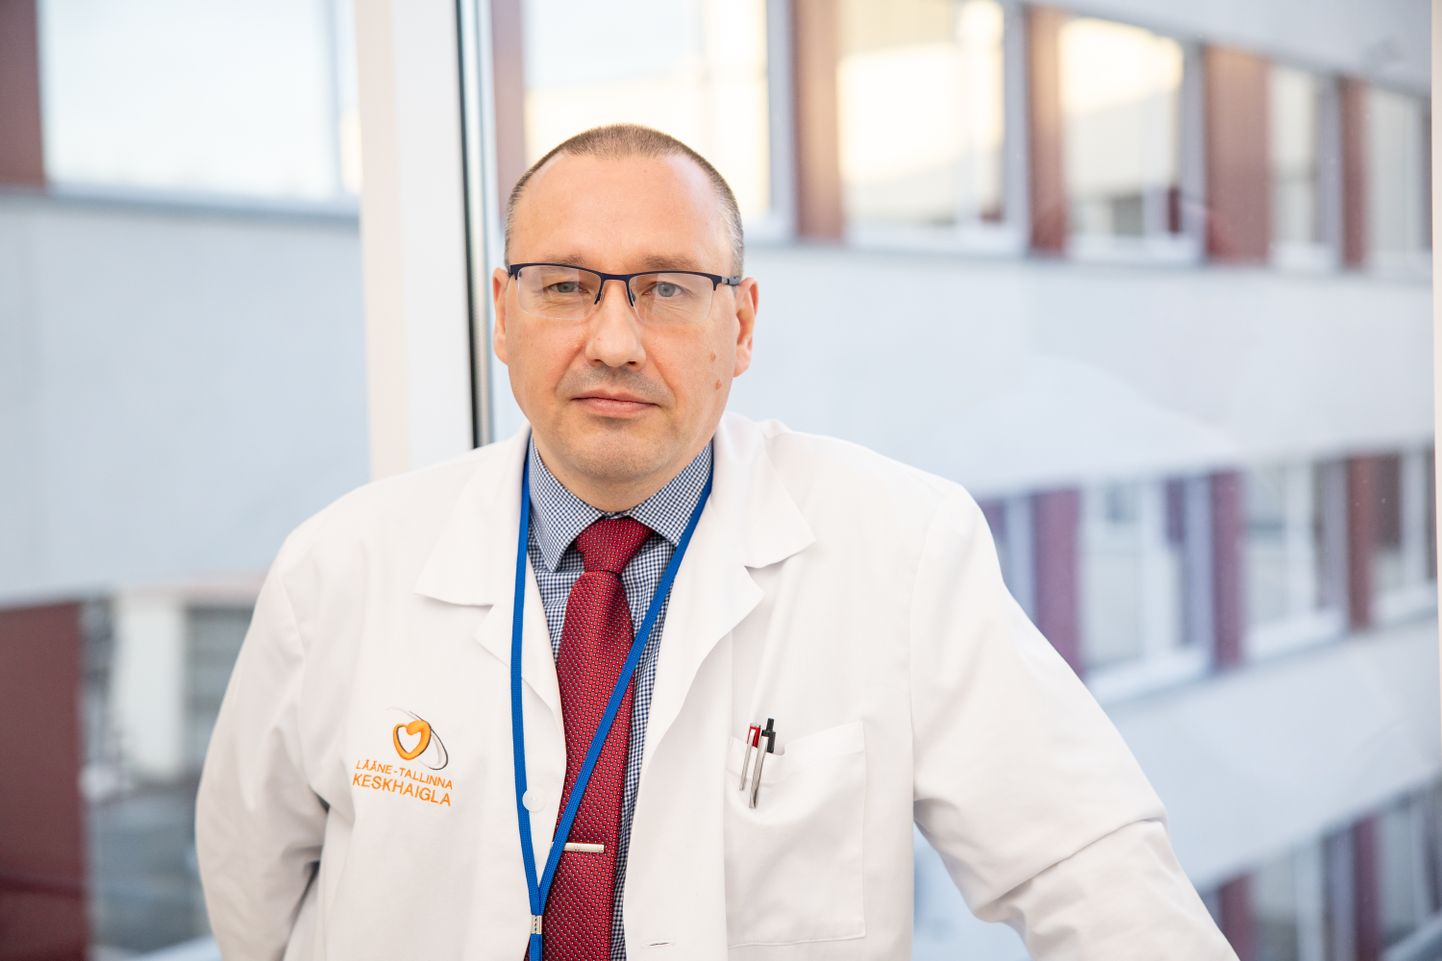 Lääne-Tallinna keskhaigla juhatuse esimees Arkadi Popov jätkab haigla juhtimist veel ühe ametiaja.